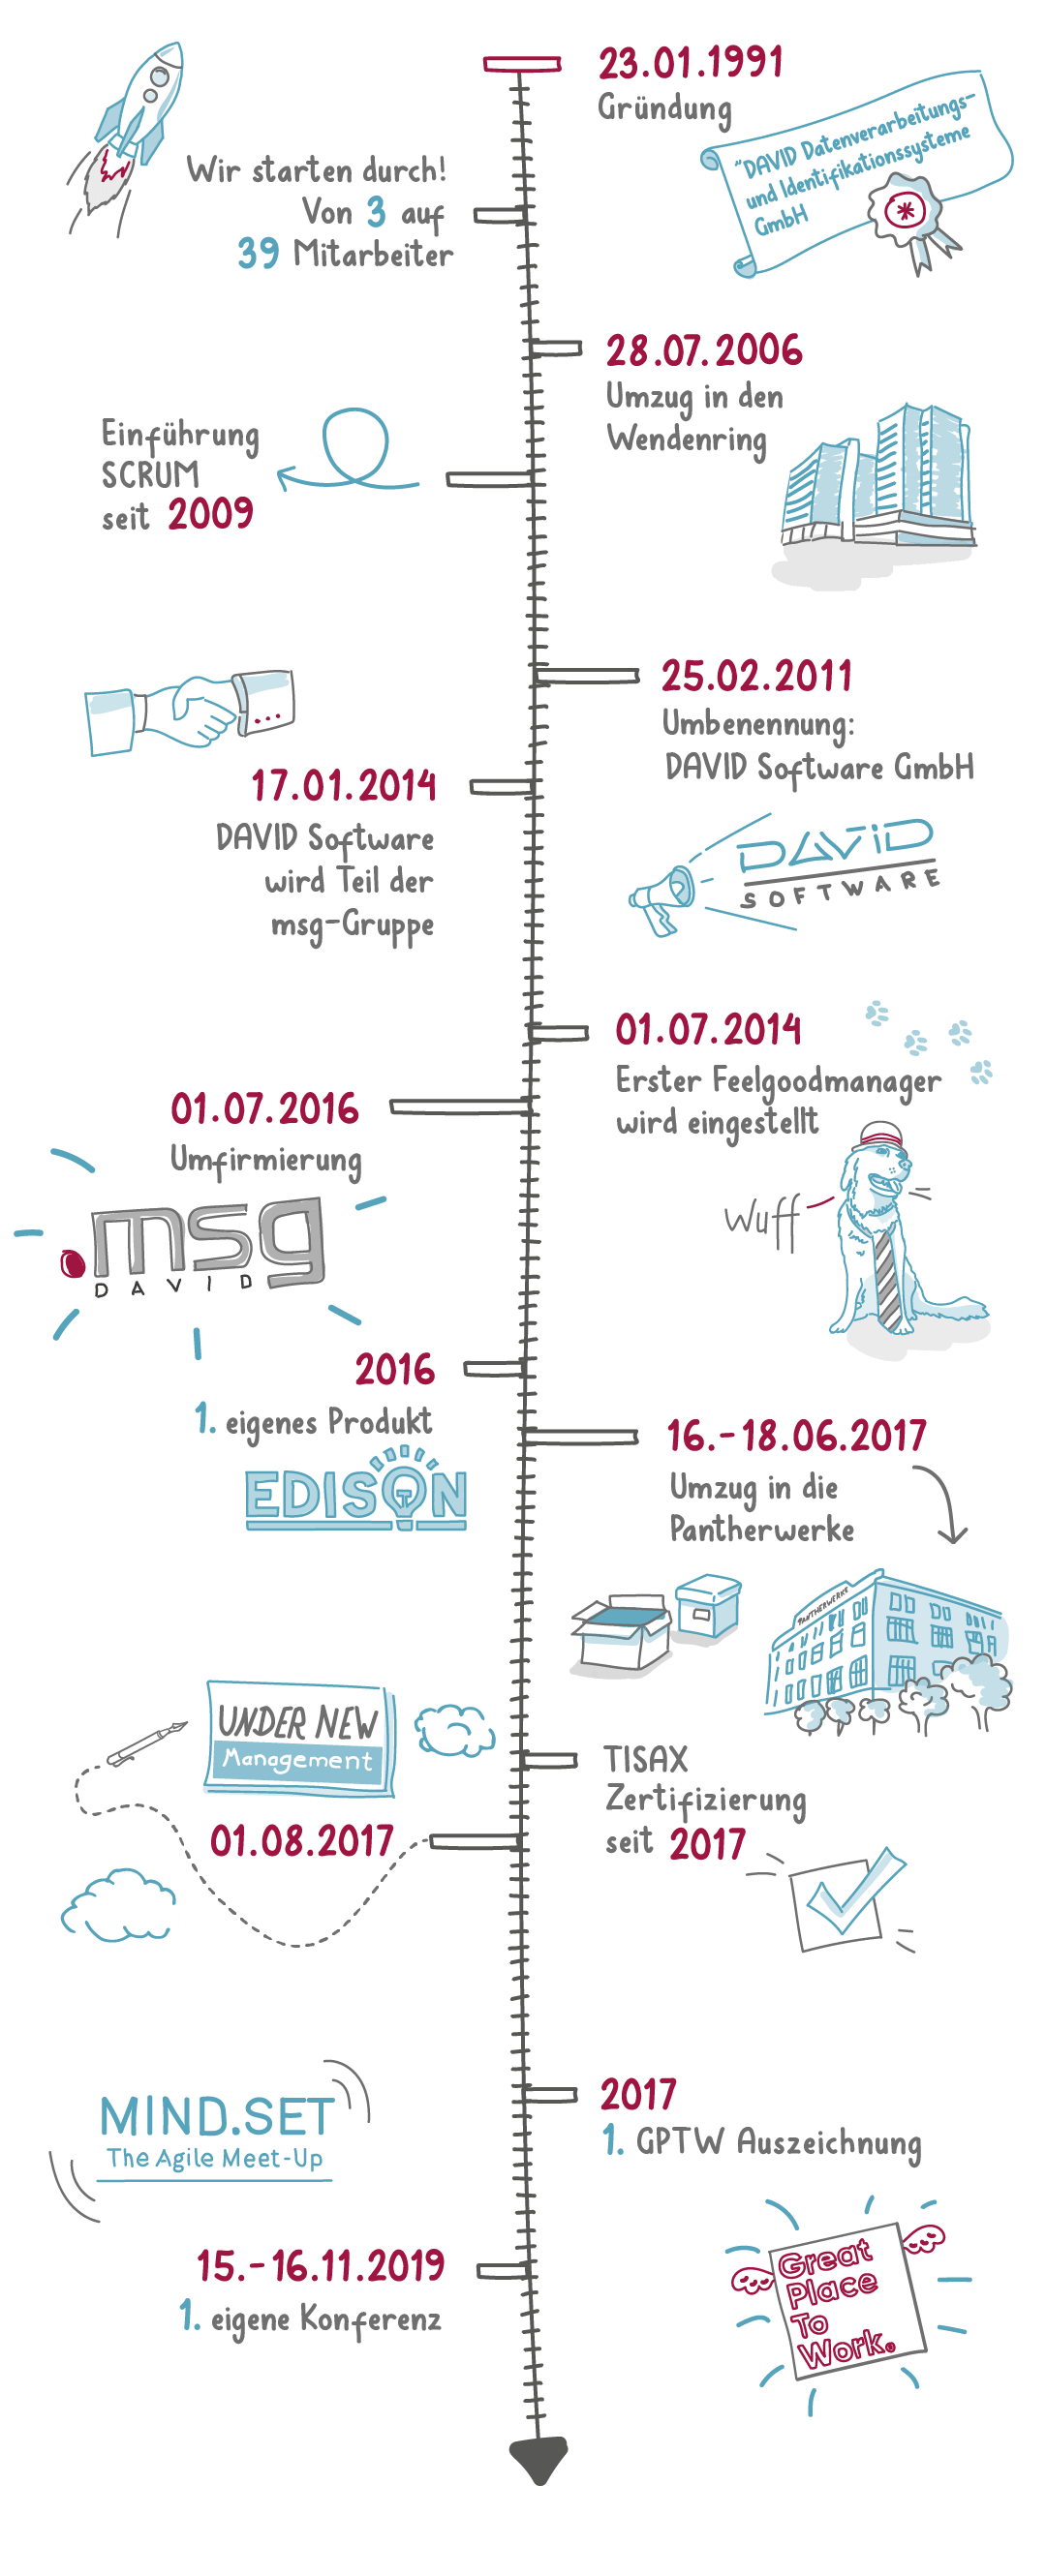 Zeitstrahl Geschichte der msg DAVID GmbH von 1991 bis 2021 (vertikale Darstellung)